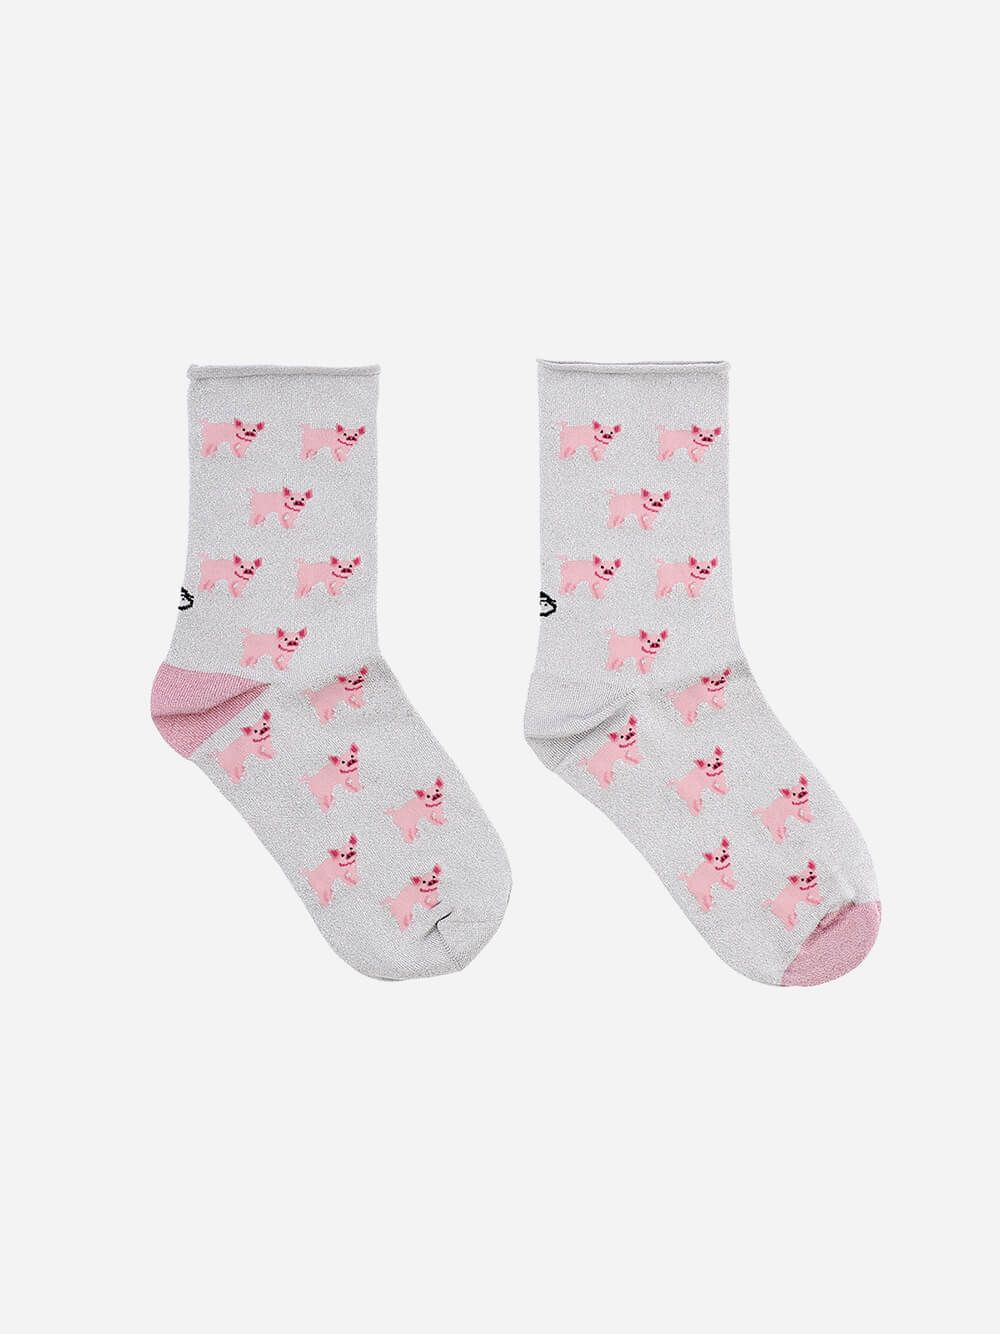 Piglets Lurex Socks | Lolo Carolo